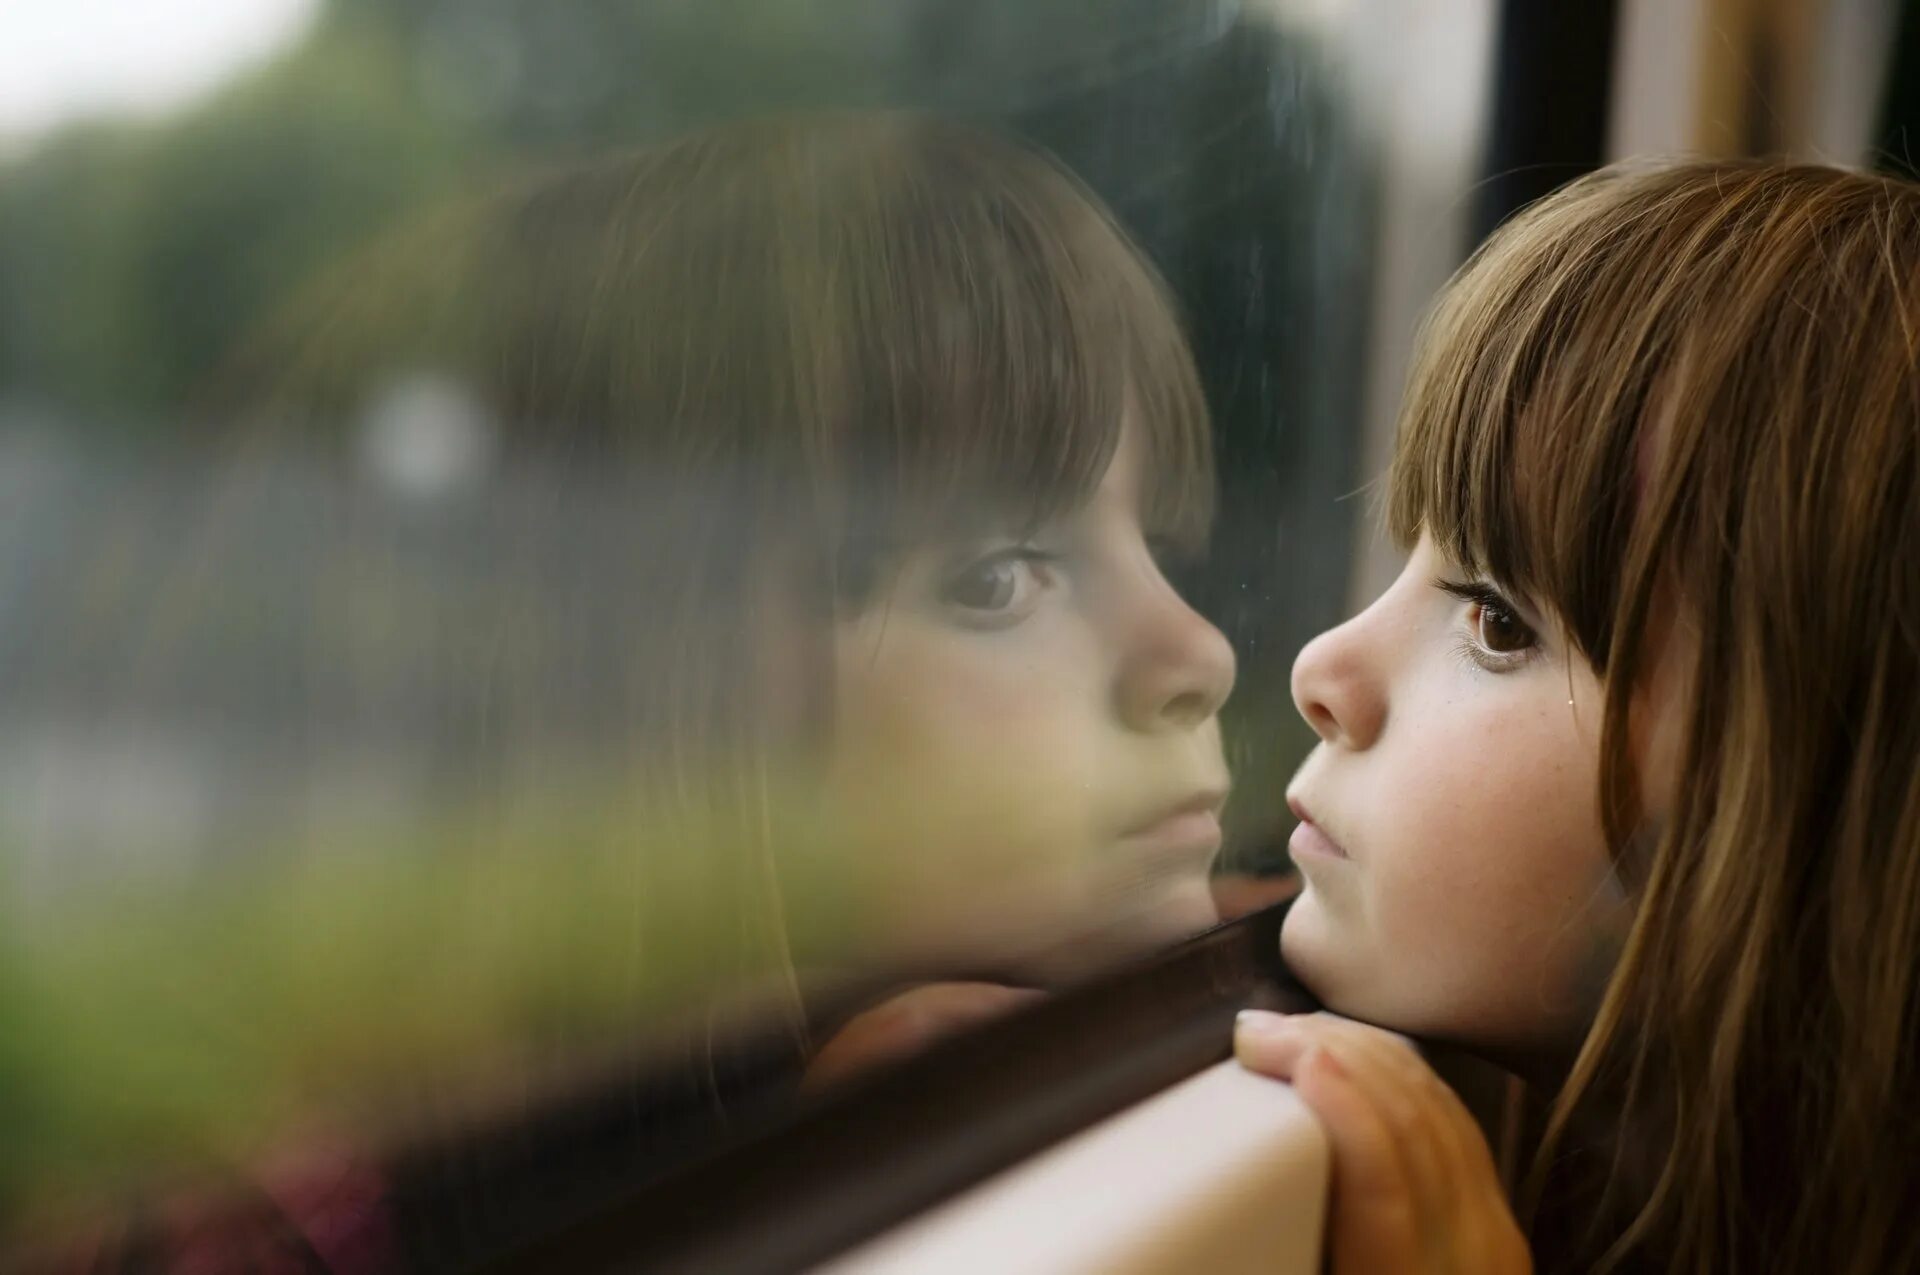 Она видит что ее маленькие. Грустный ребенок. Девочка грустит. Маленькая девочка у окна. Дети ждут.